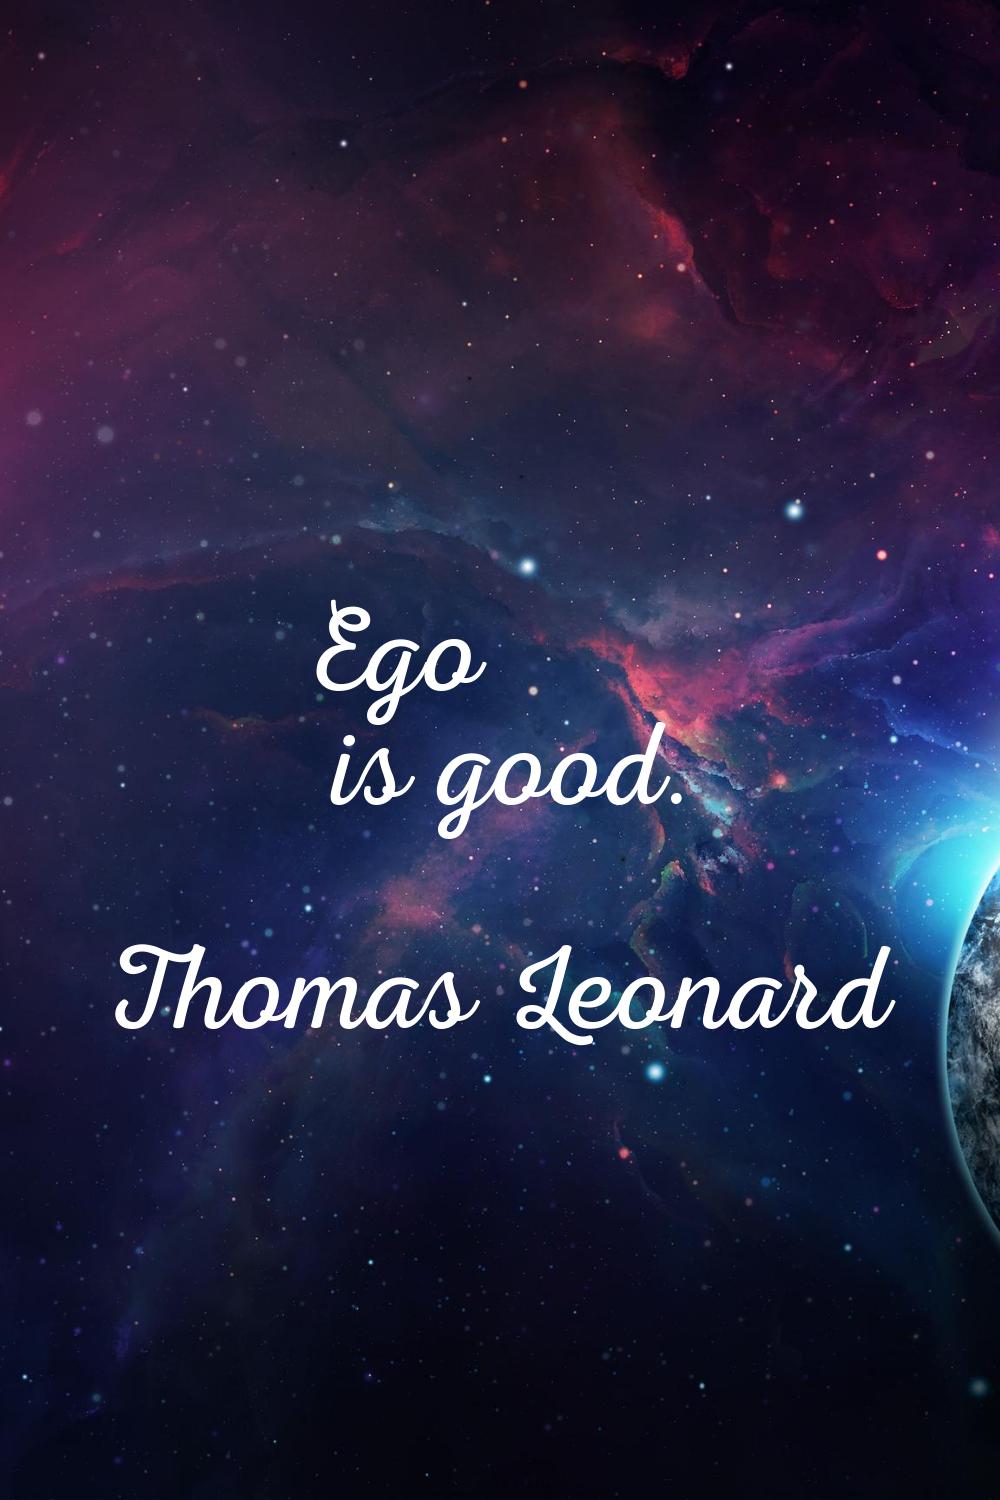 Ego is good.